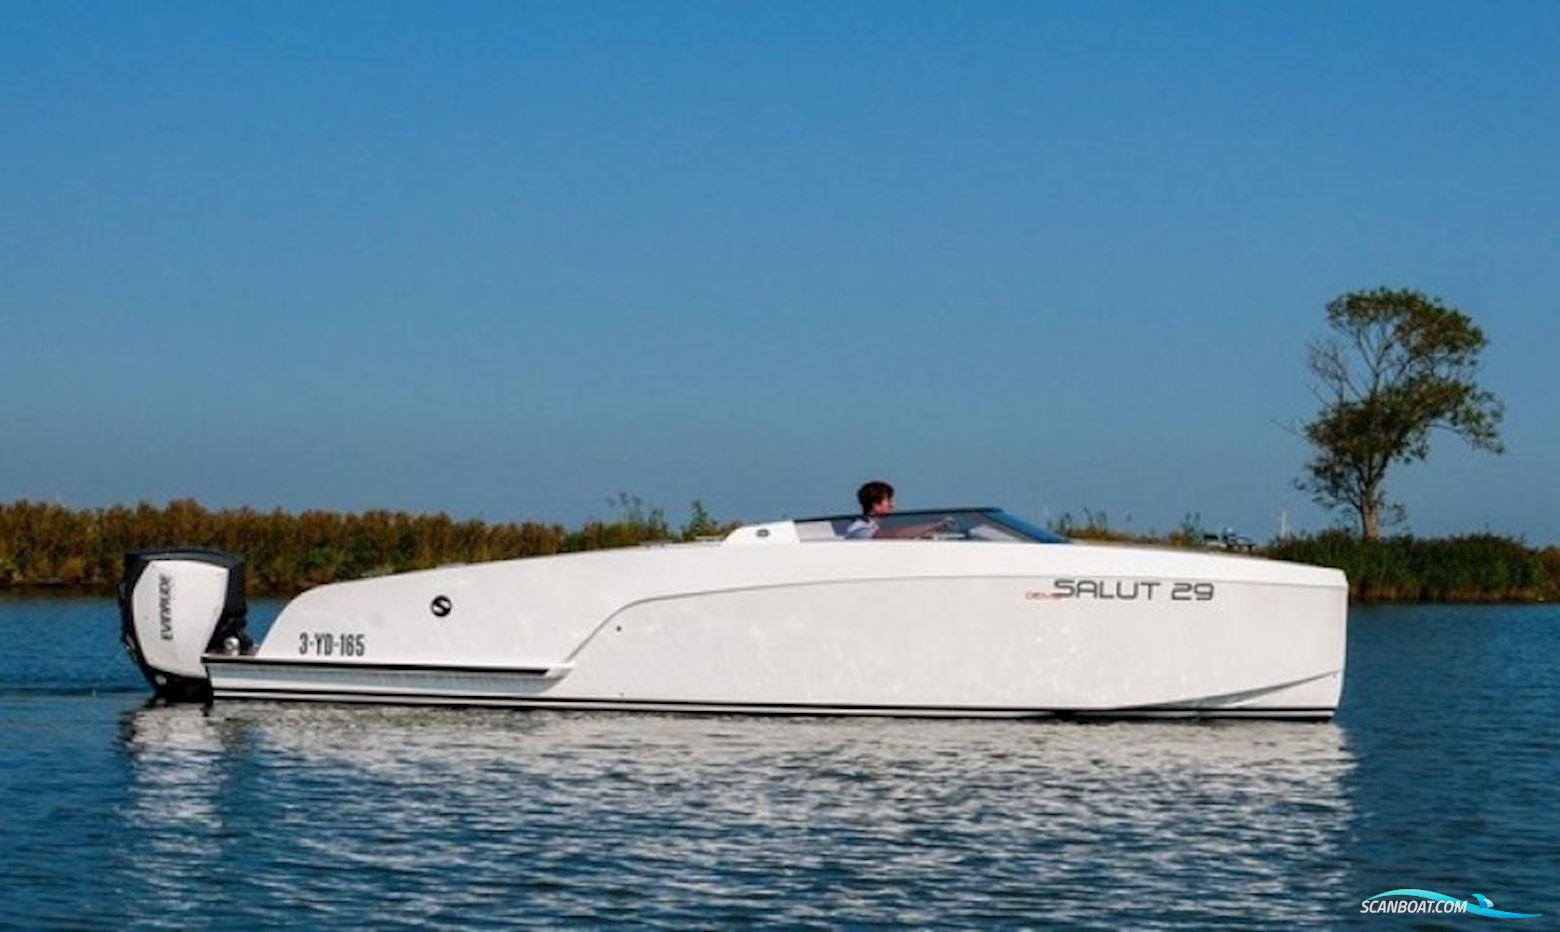 Salut 29 Motorbåd 2020, med Evinrude motor, Holland